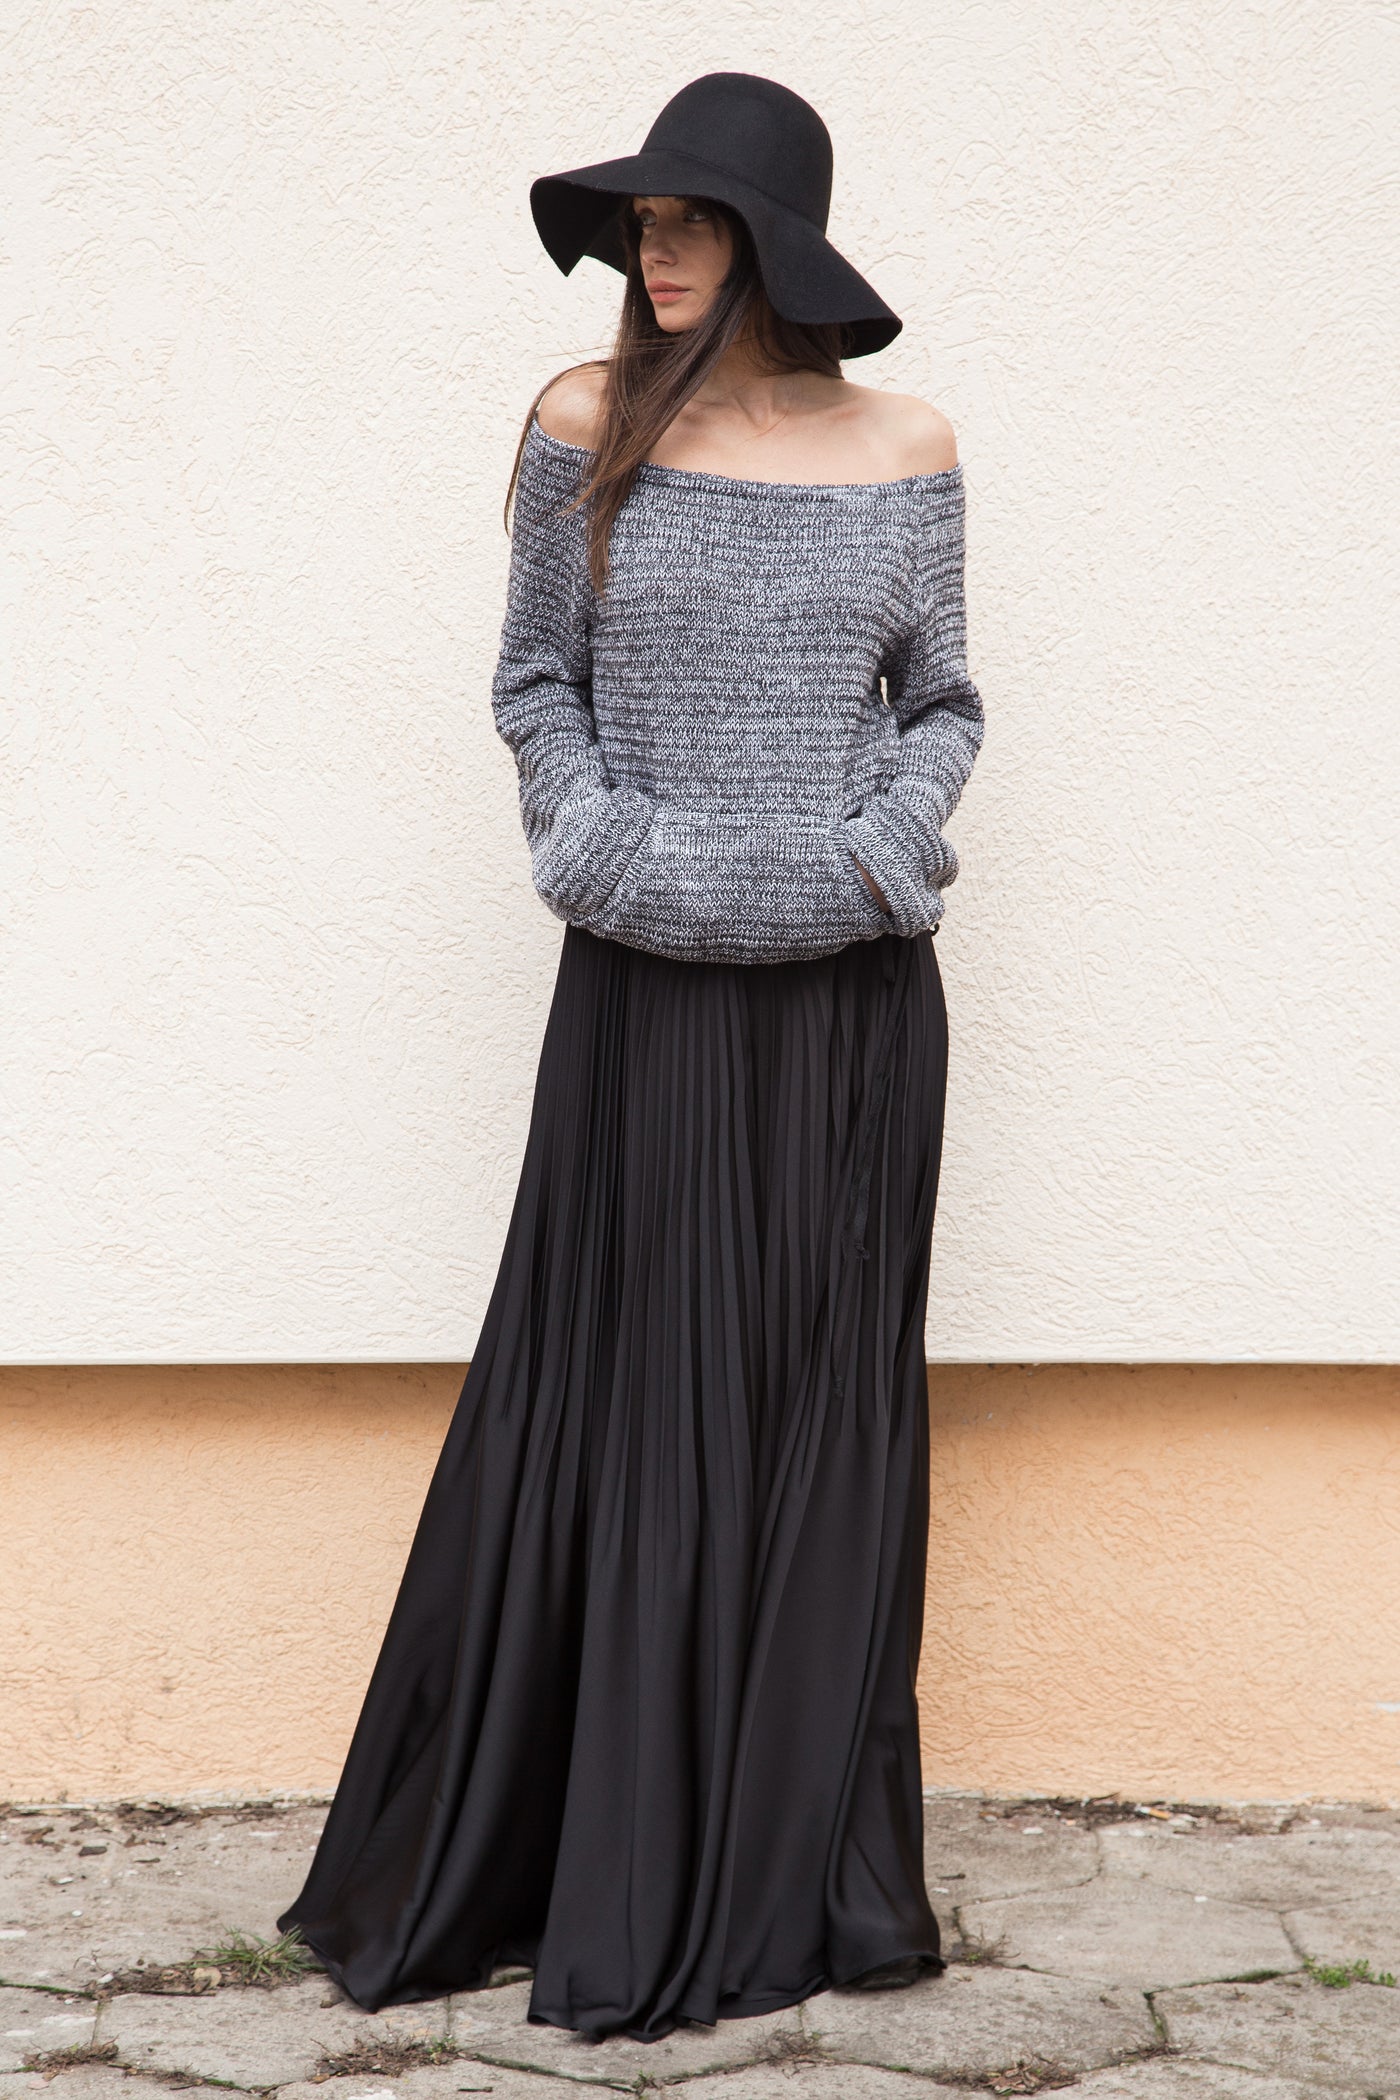 Open shoulder grey melange asymmetrical knit sweater F1553